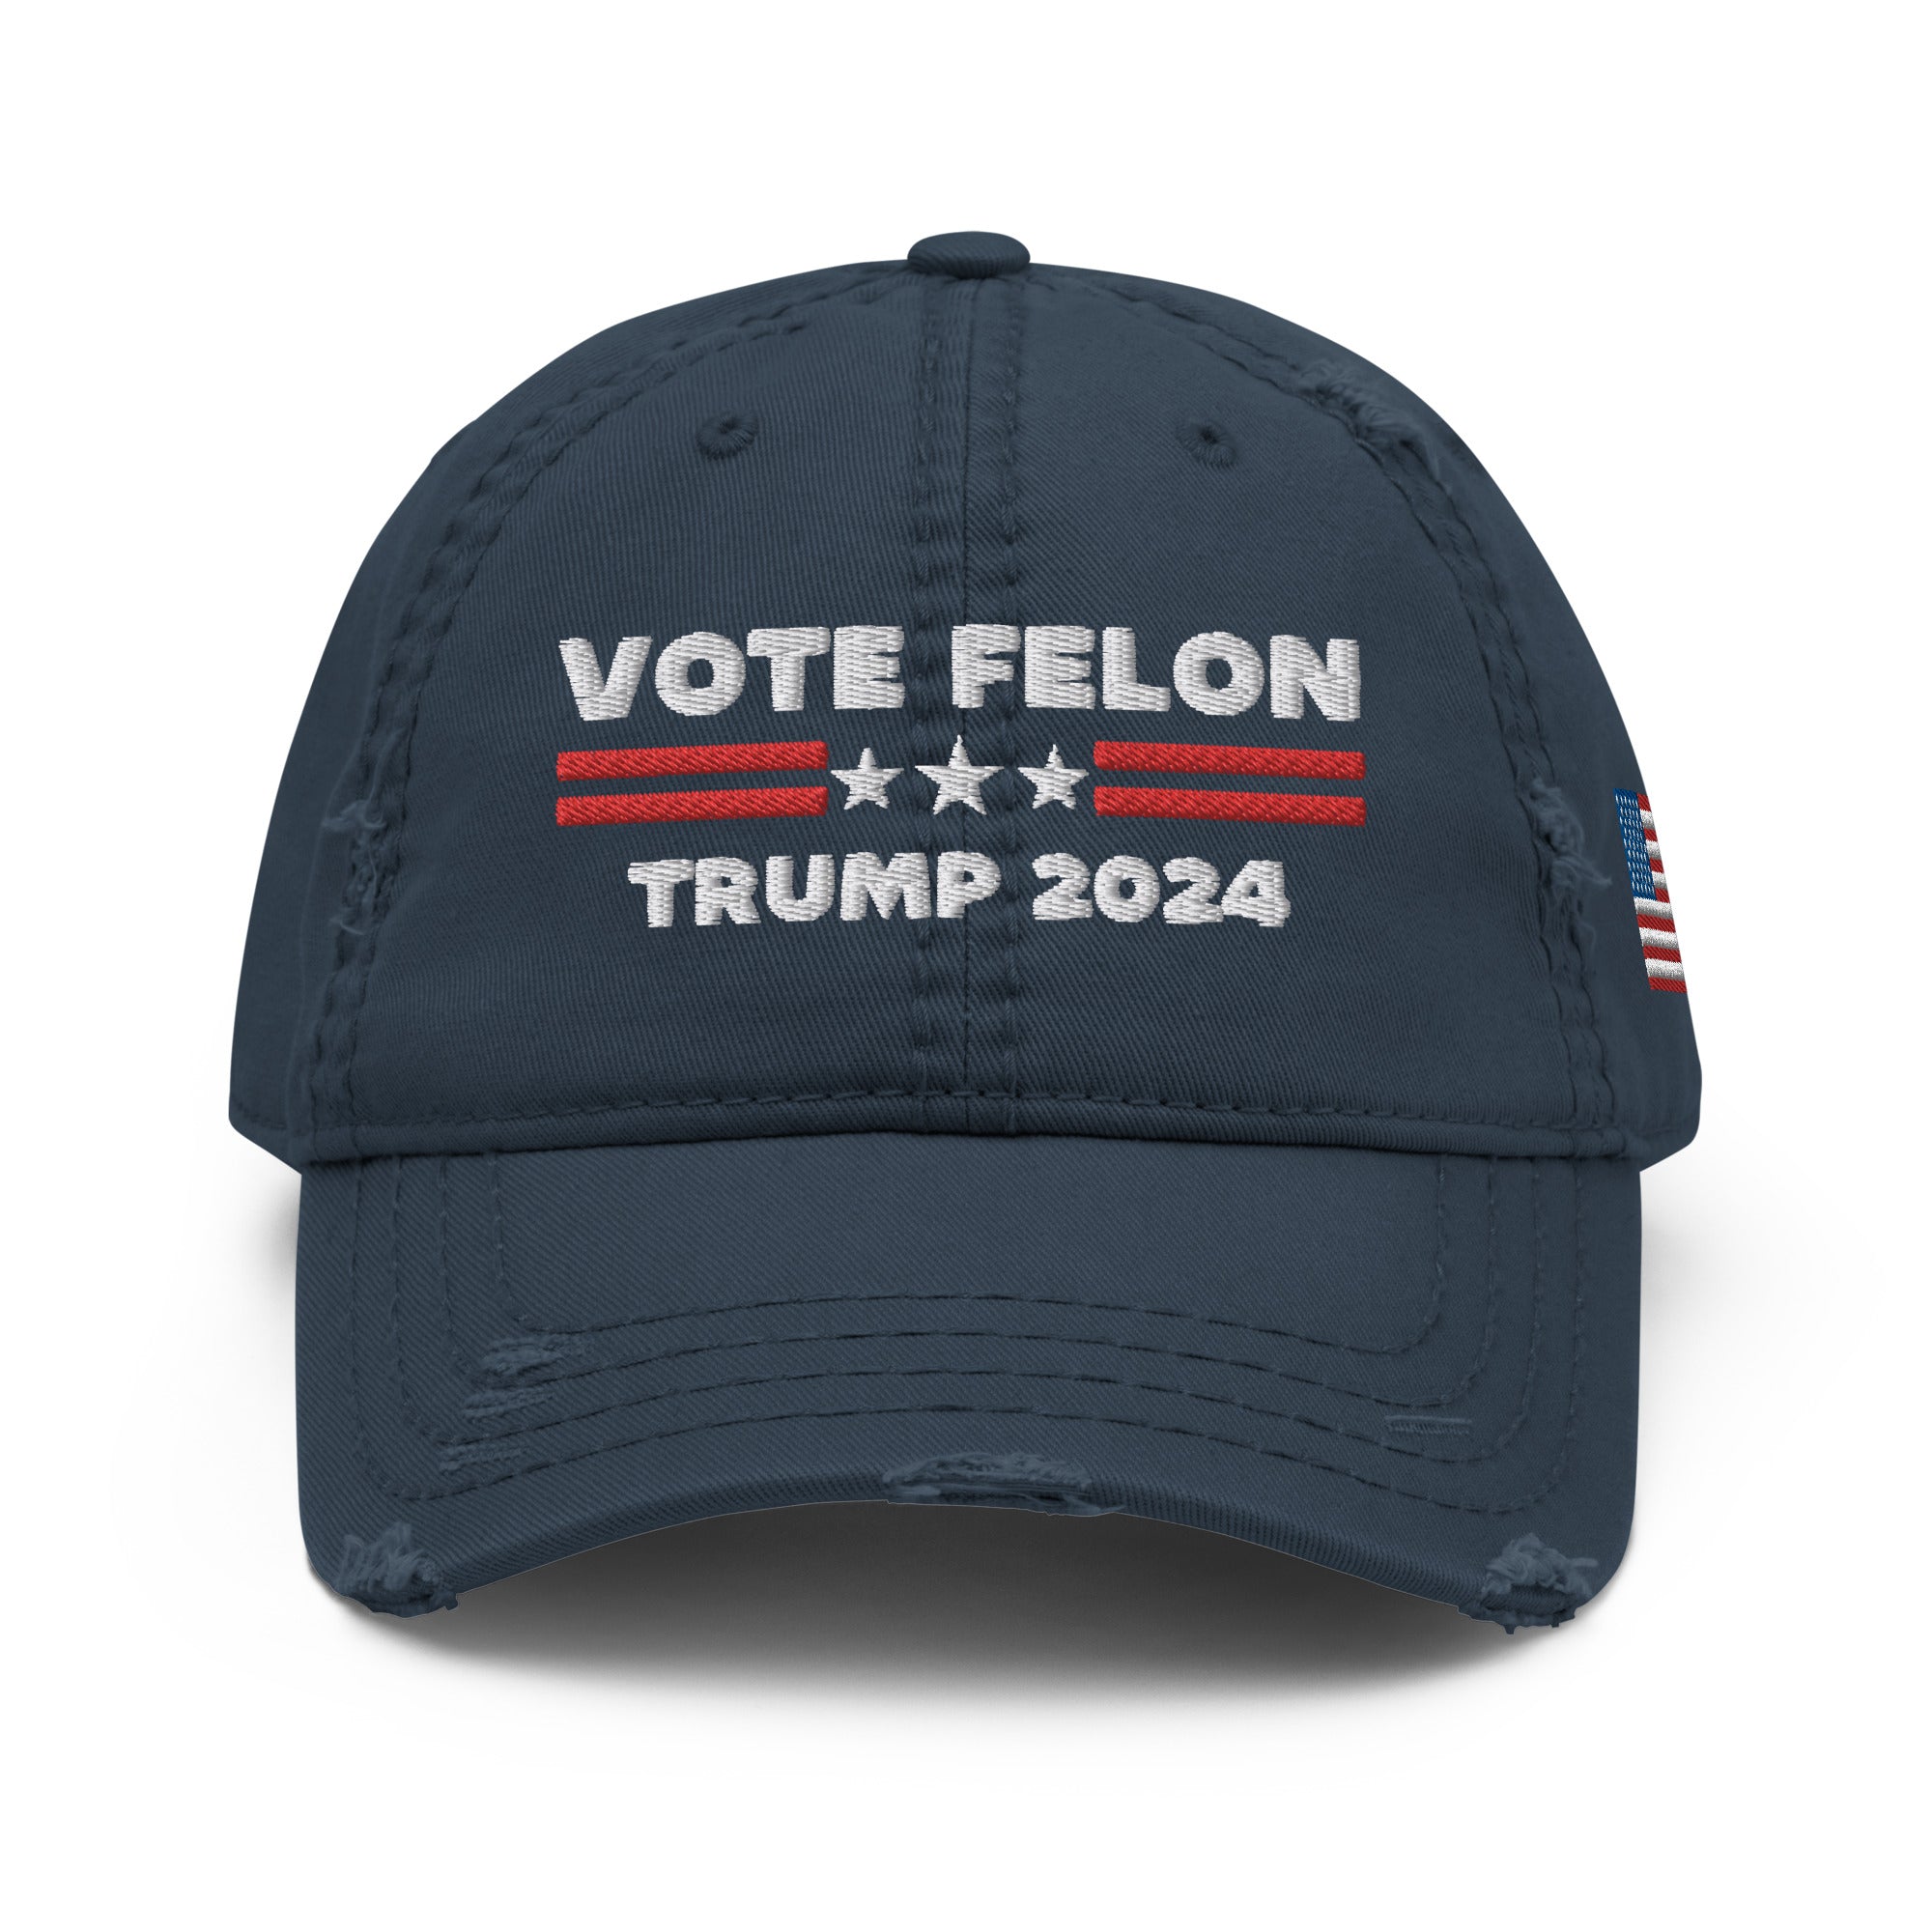 Vote Felon 2024 Sombrero de papá, Presidente condenado, Sombrero Trump 2024, Regalos republicanos, Gorra electoral, Sombreros republicanos, Sombrero político, Sombreros divertidos